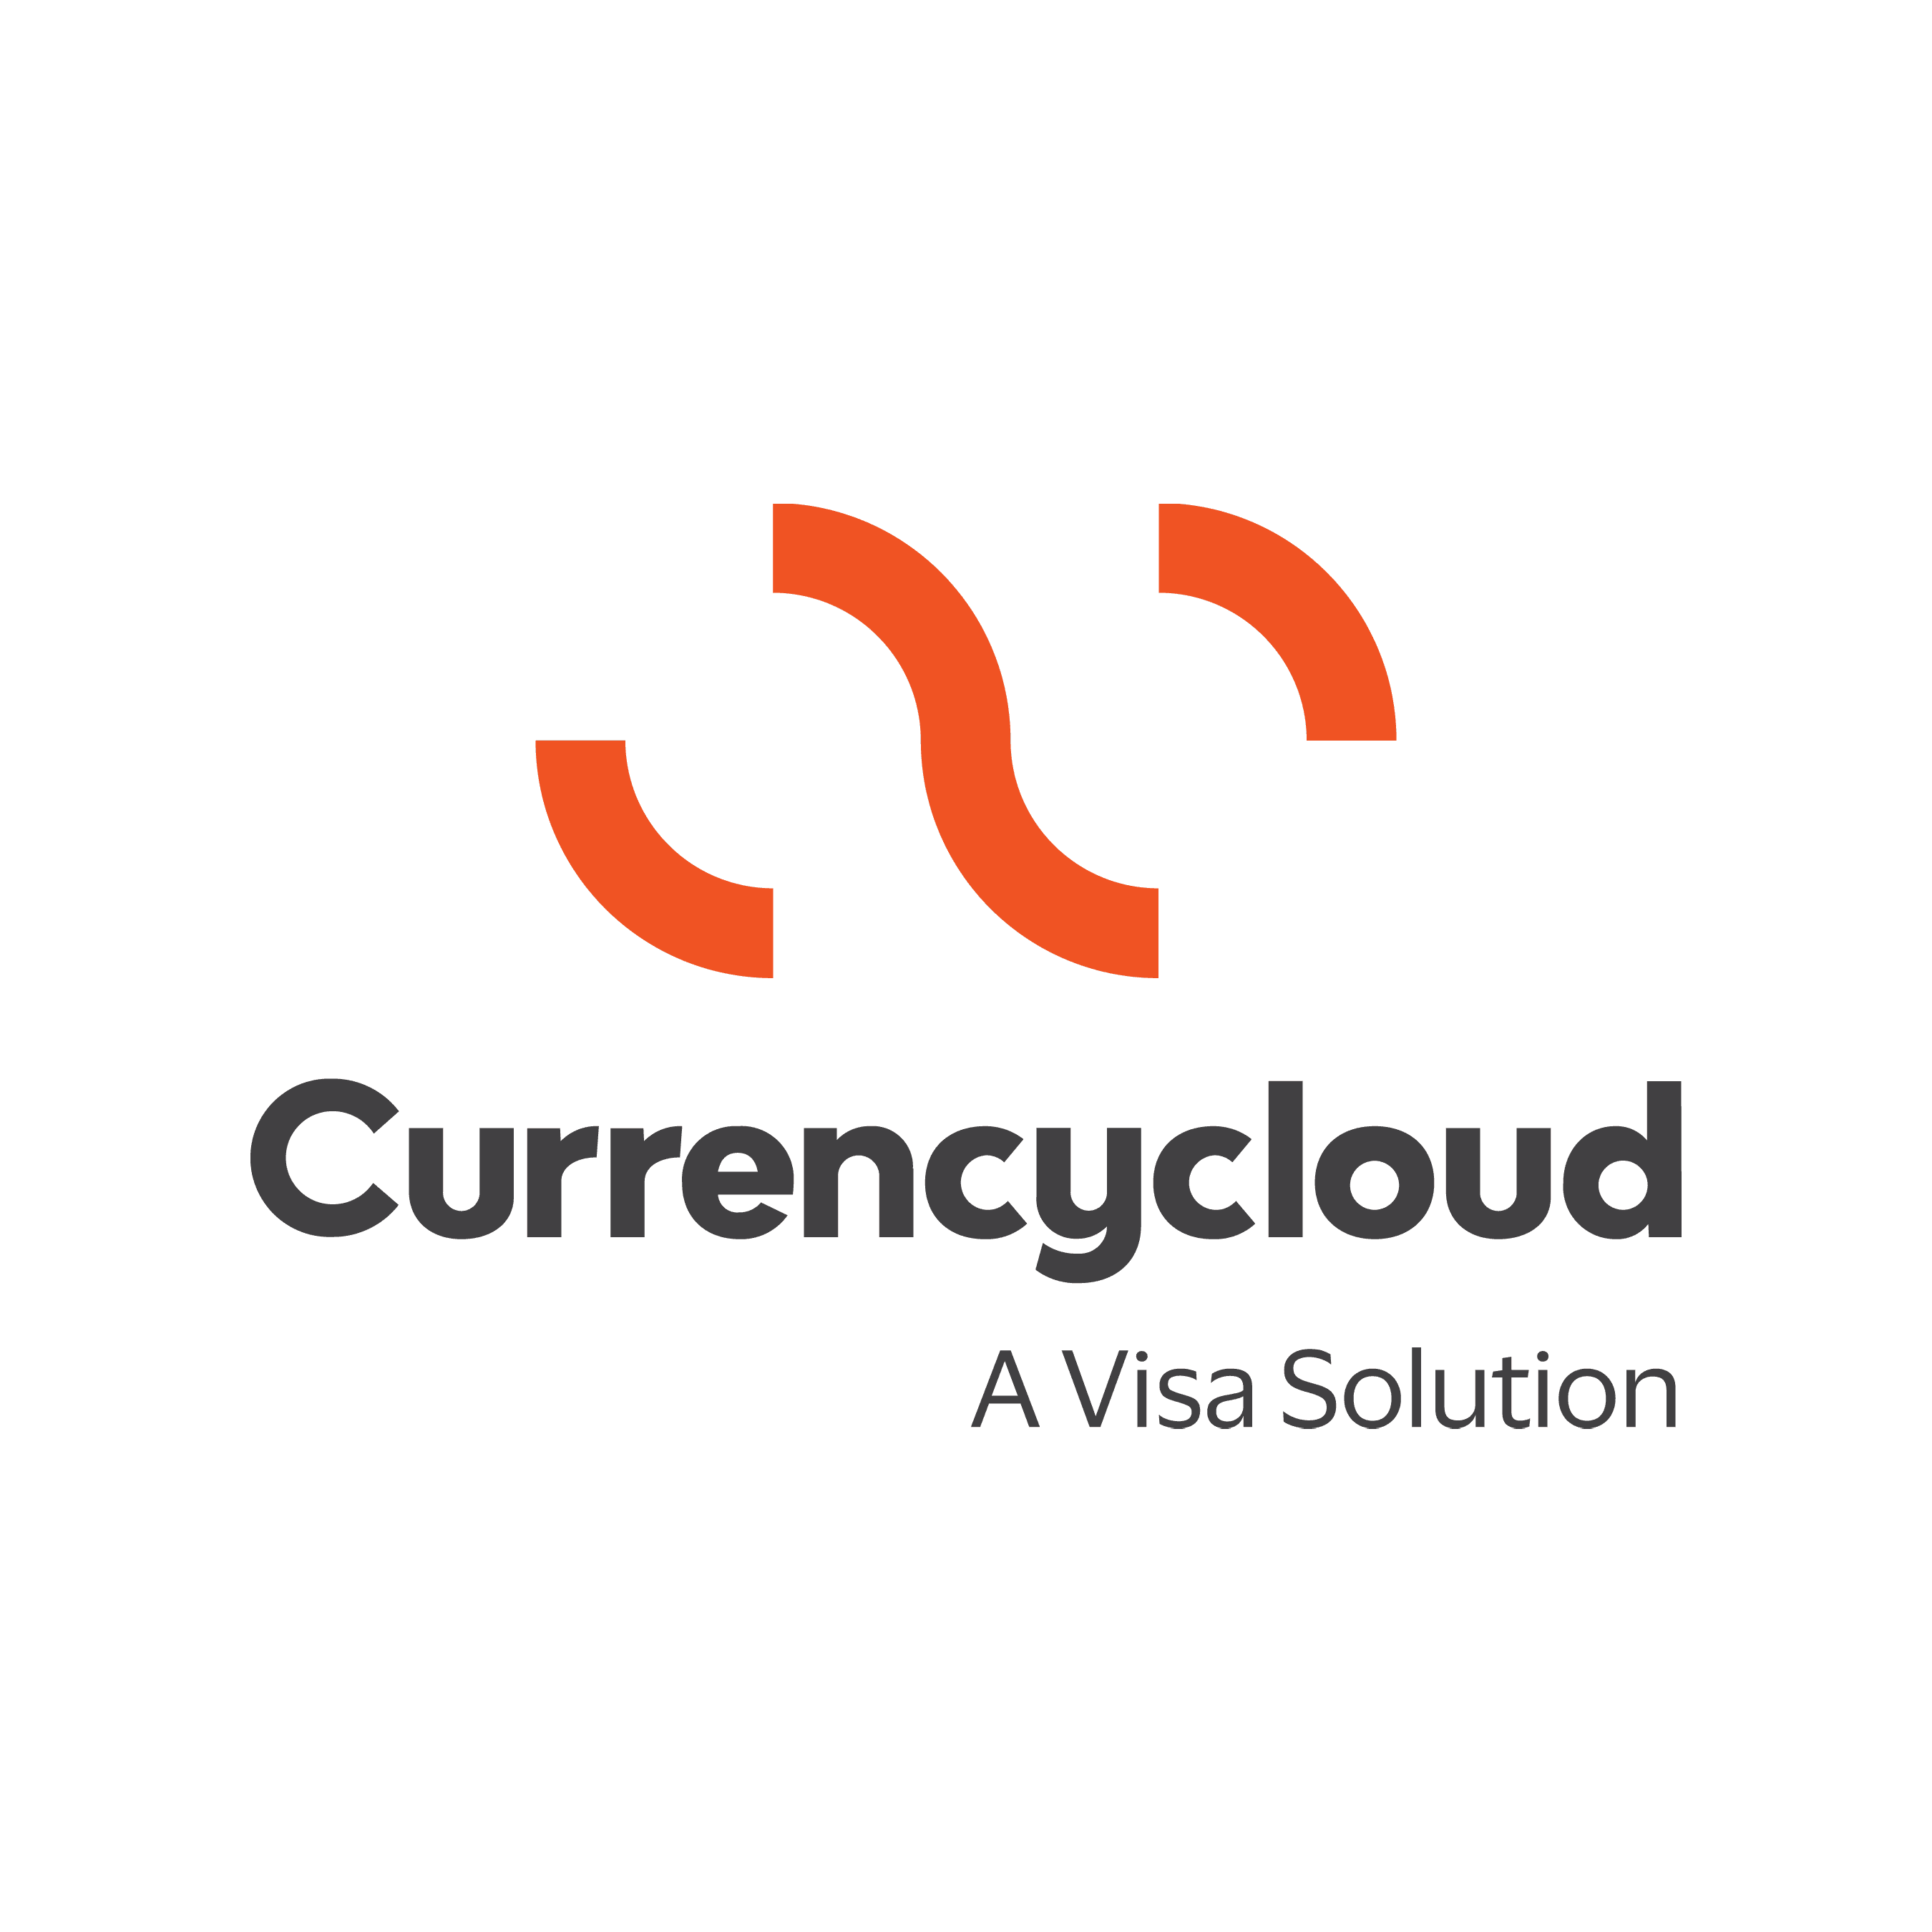 Currencycloud-VISA-Logo_Orange-Grey_RGB_Square